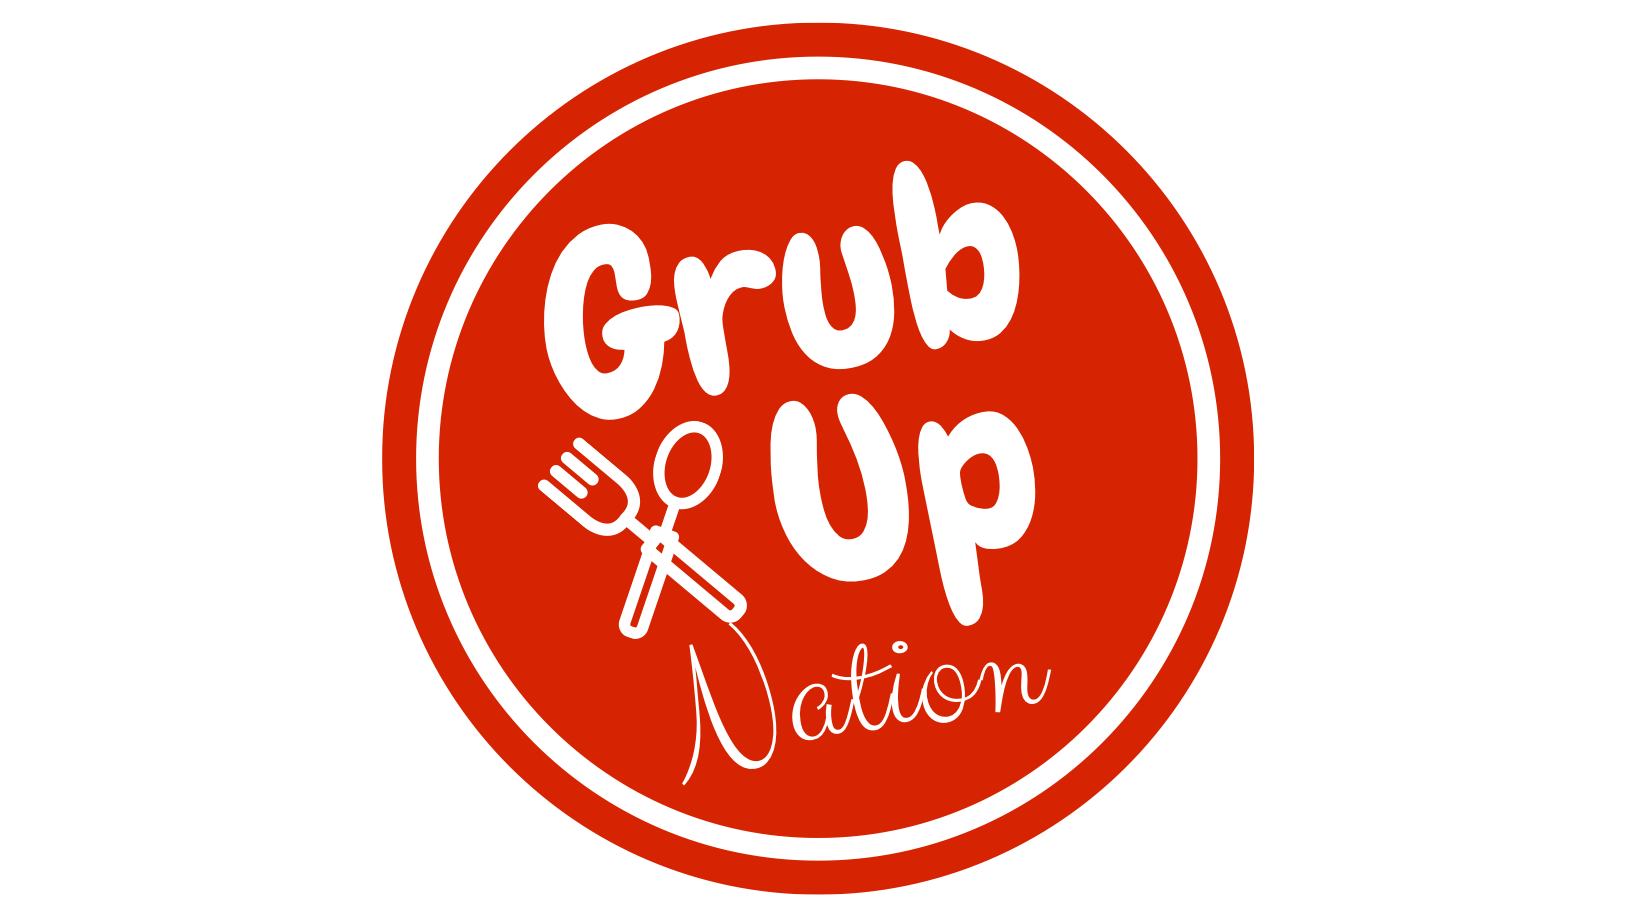 Grub up red circle logo